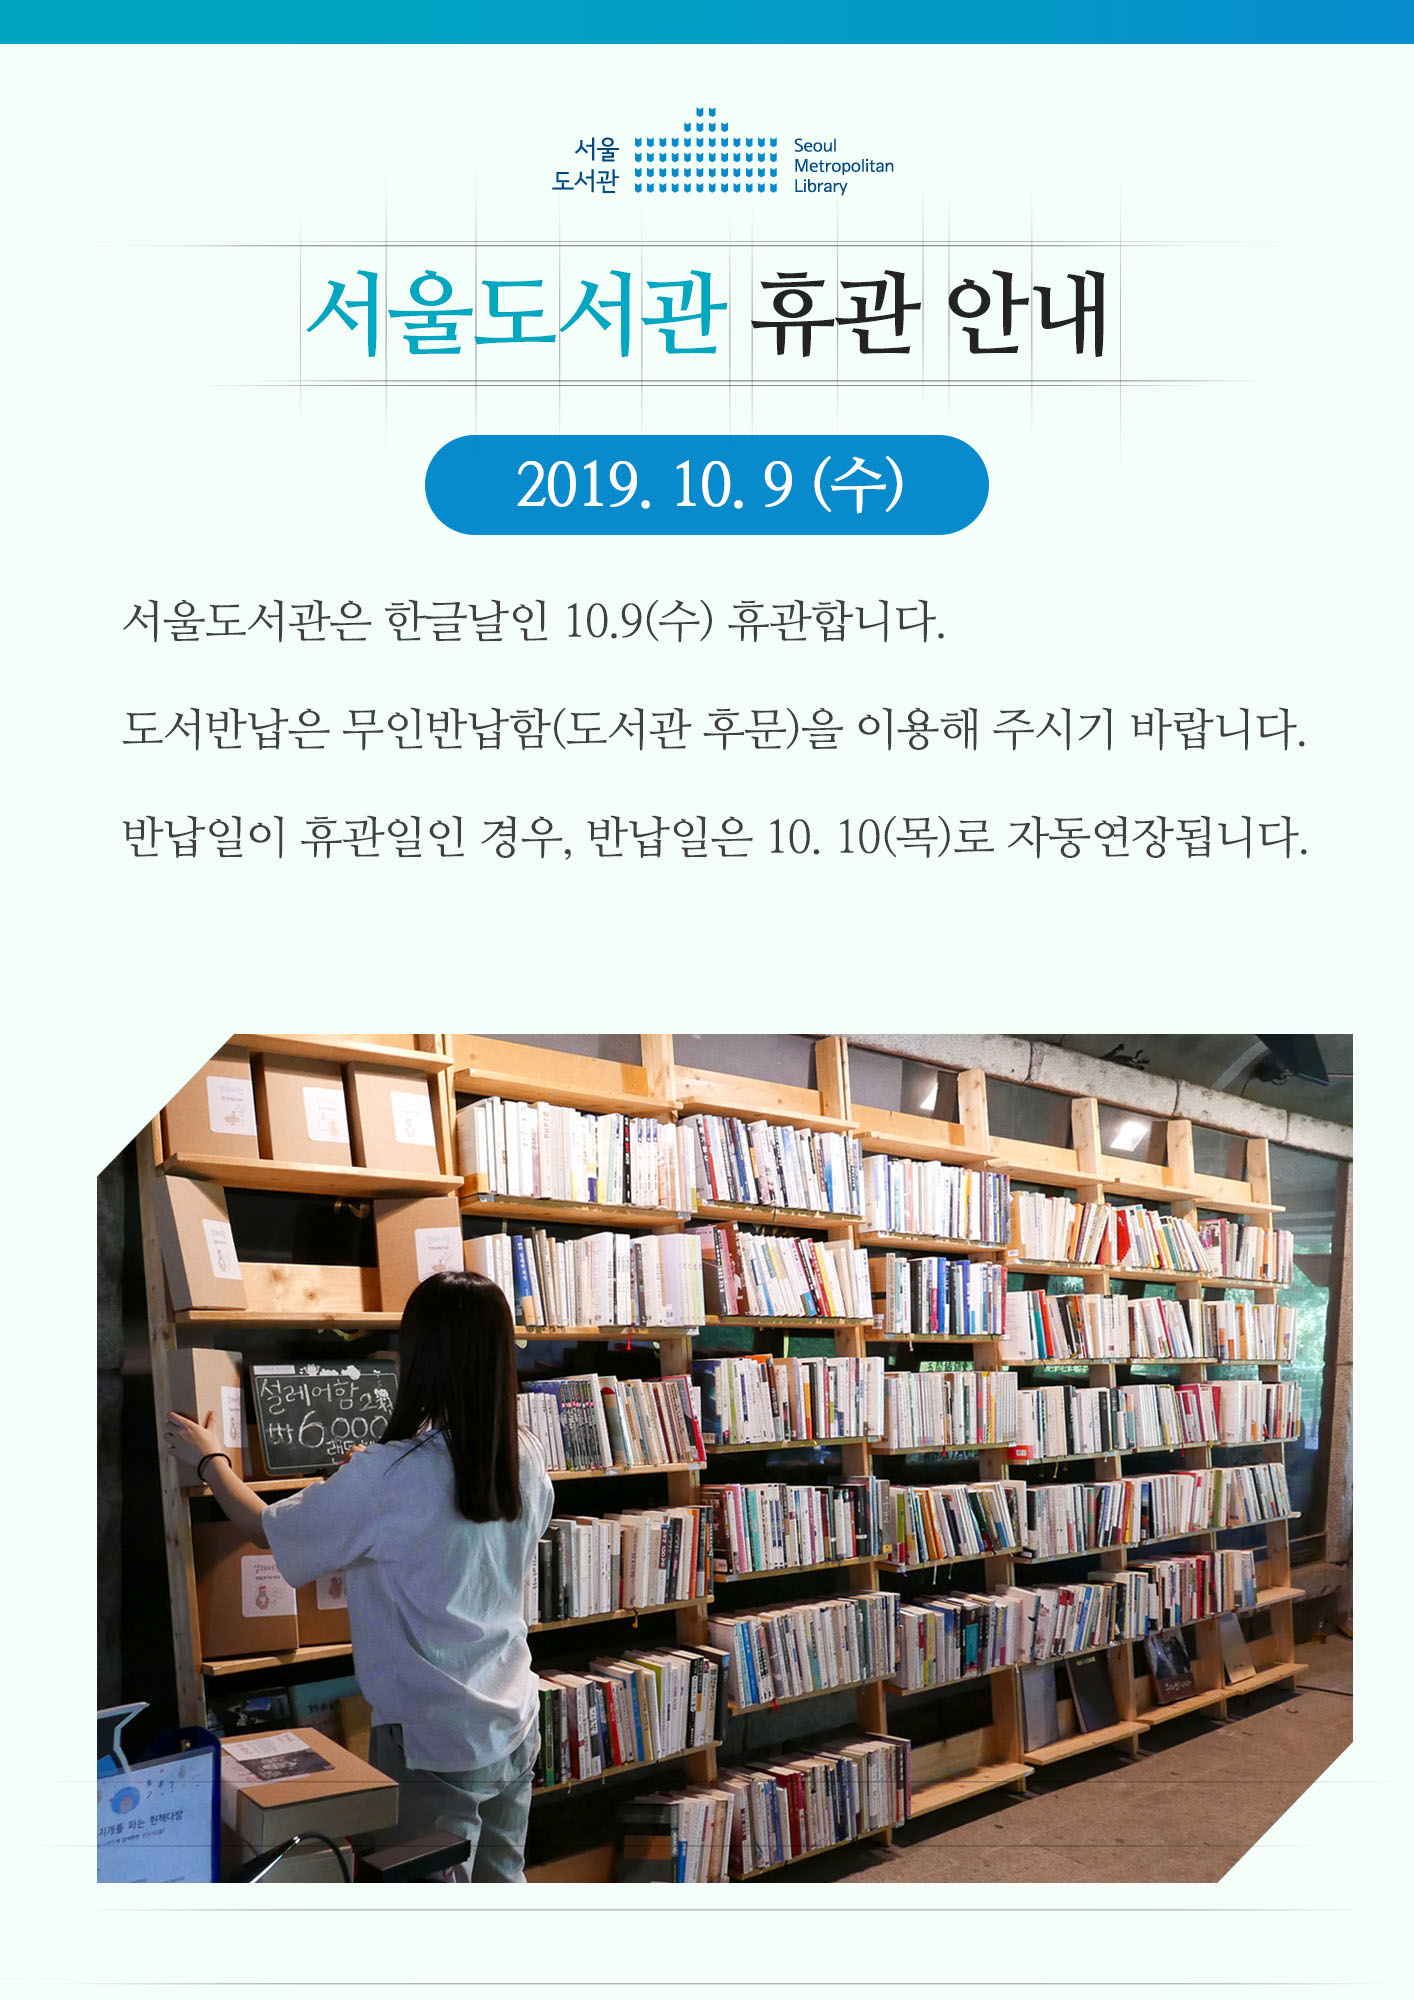 서울도서관 한글날(10월 9일) 휴관 안내  포스터